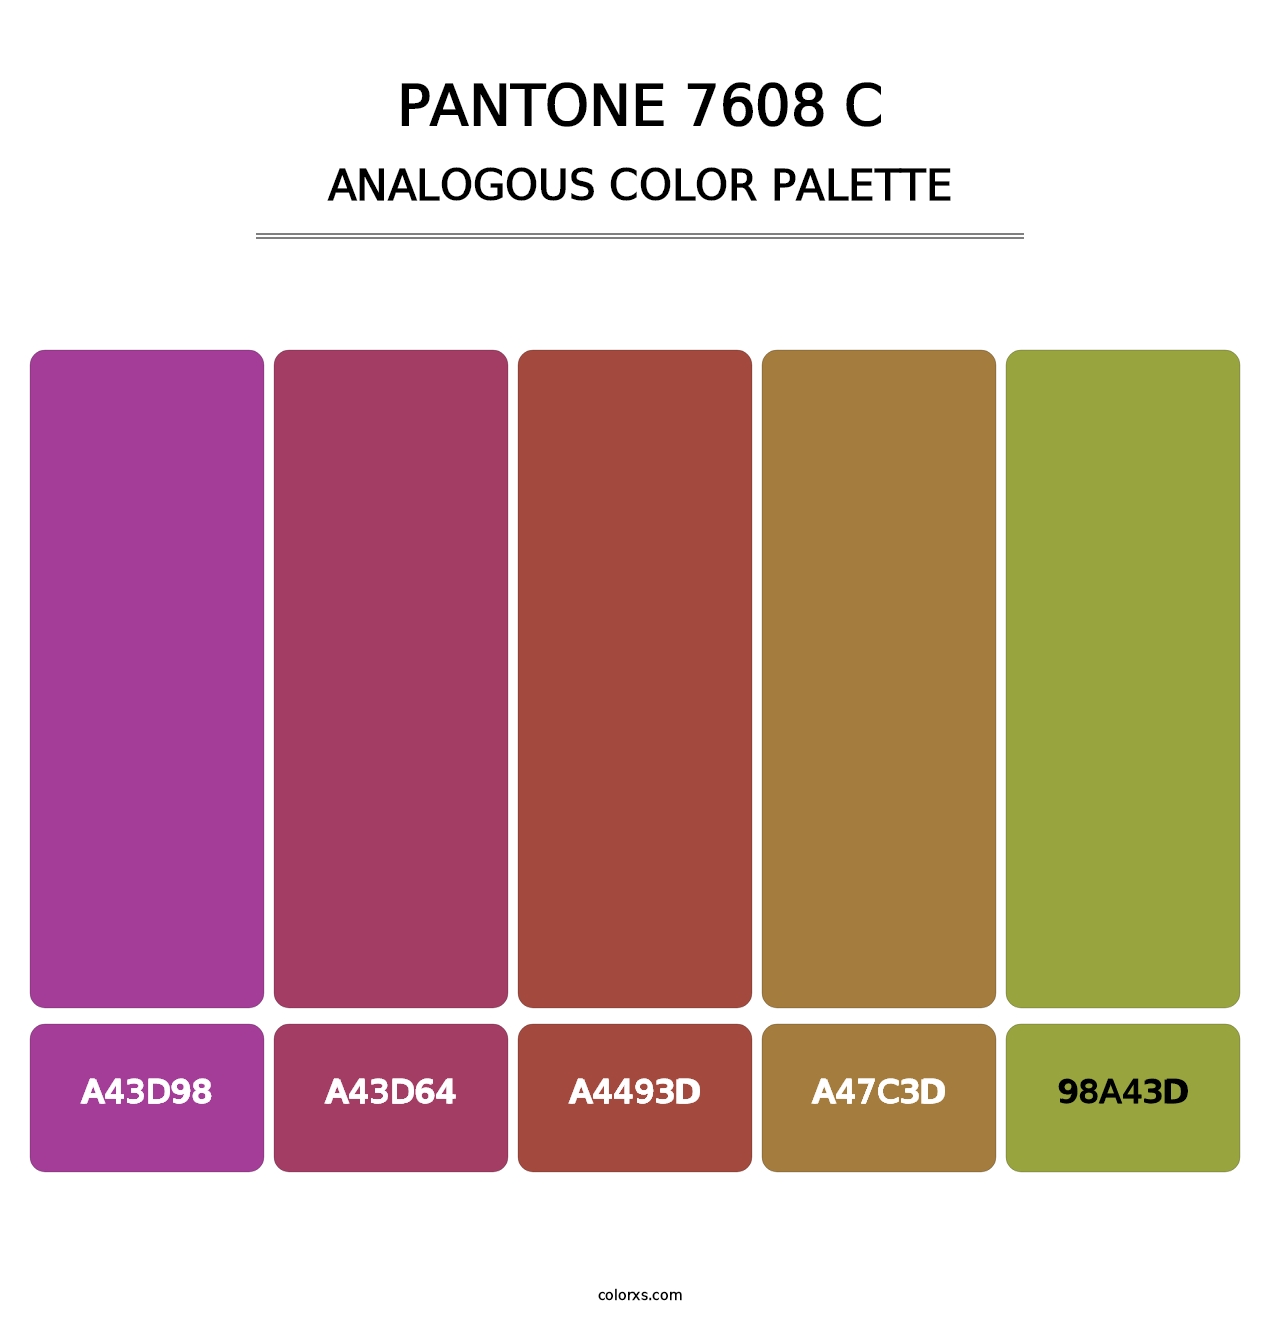 PANTONE 7608 C - Analogous Color Palette